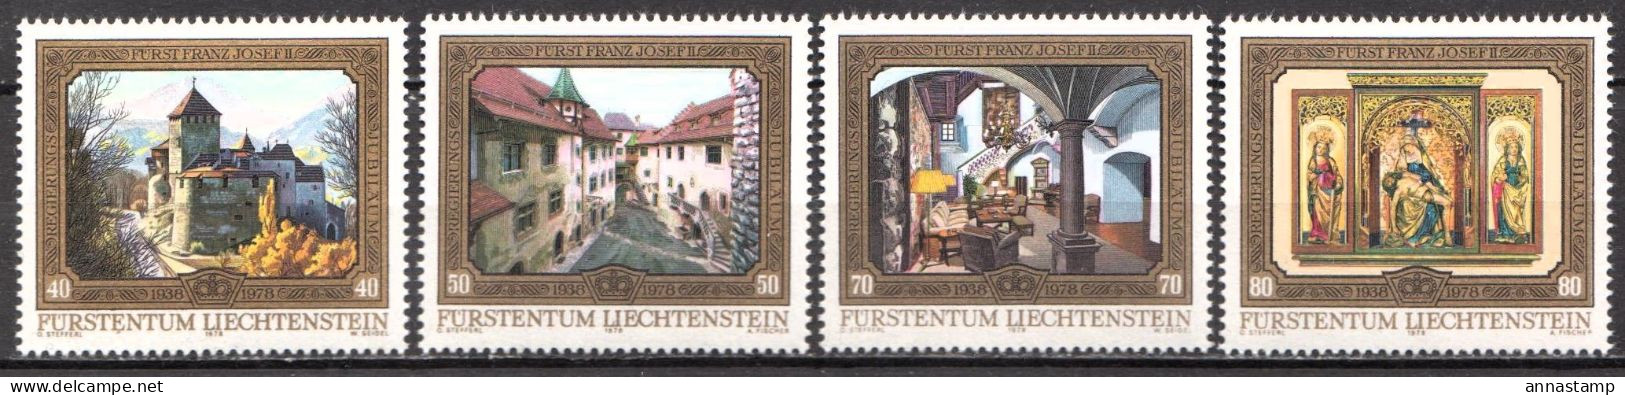 Liechtenstein MNH Set - Castillos